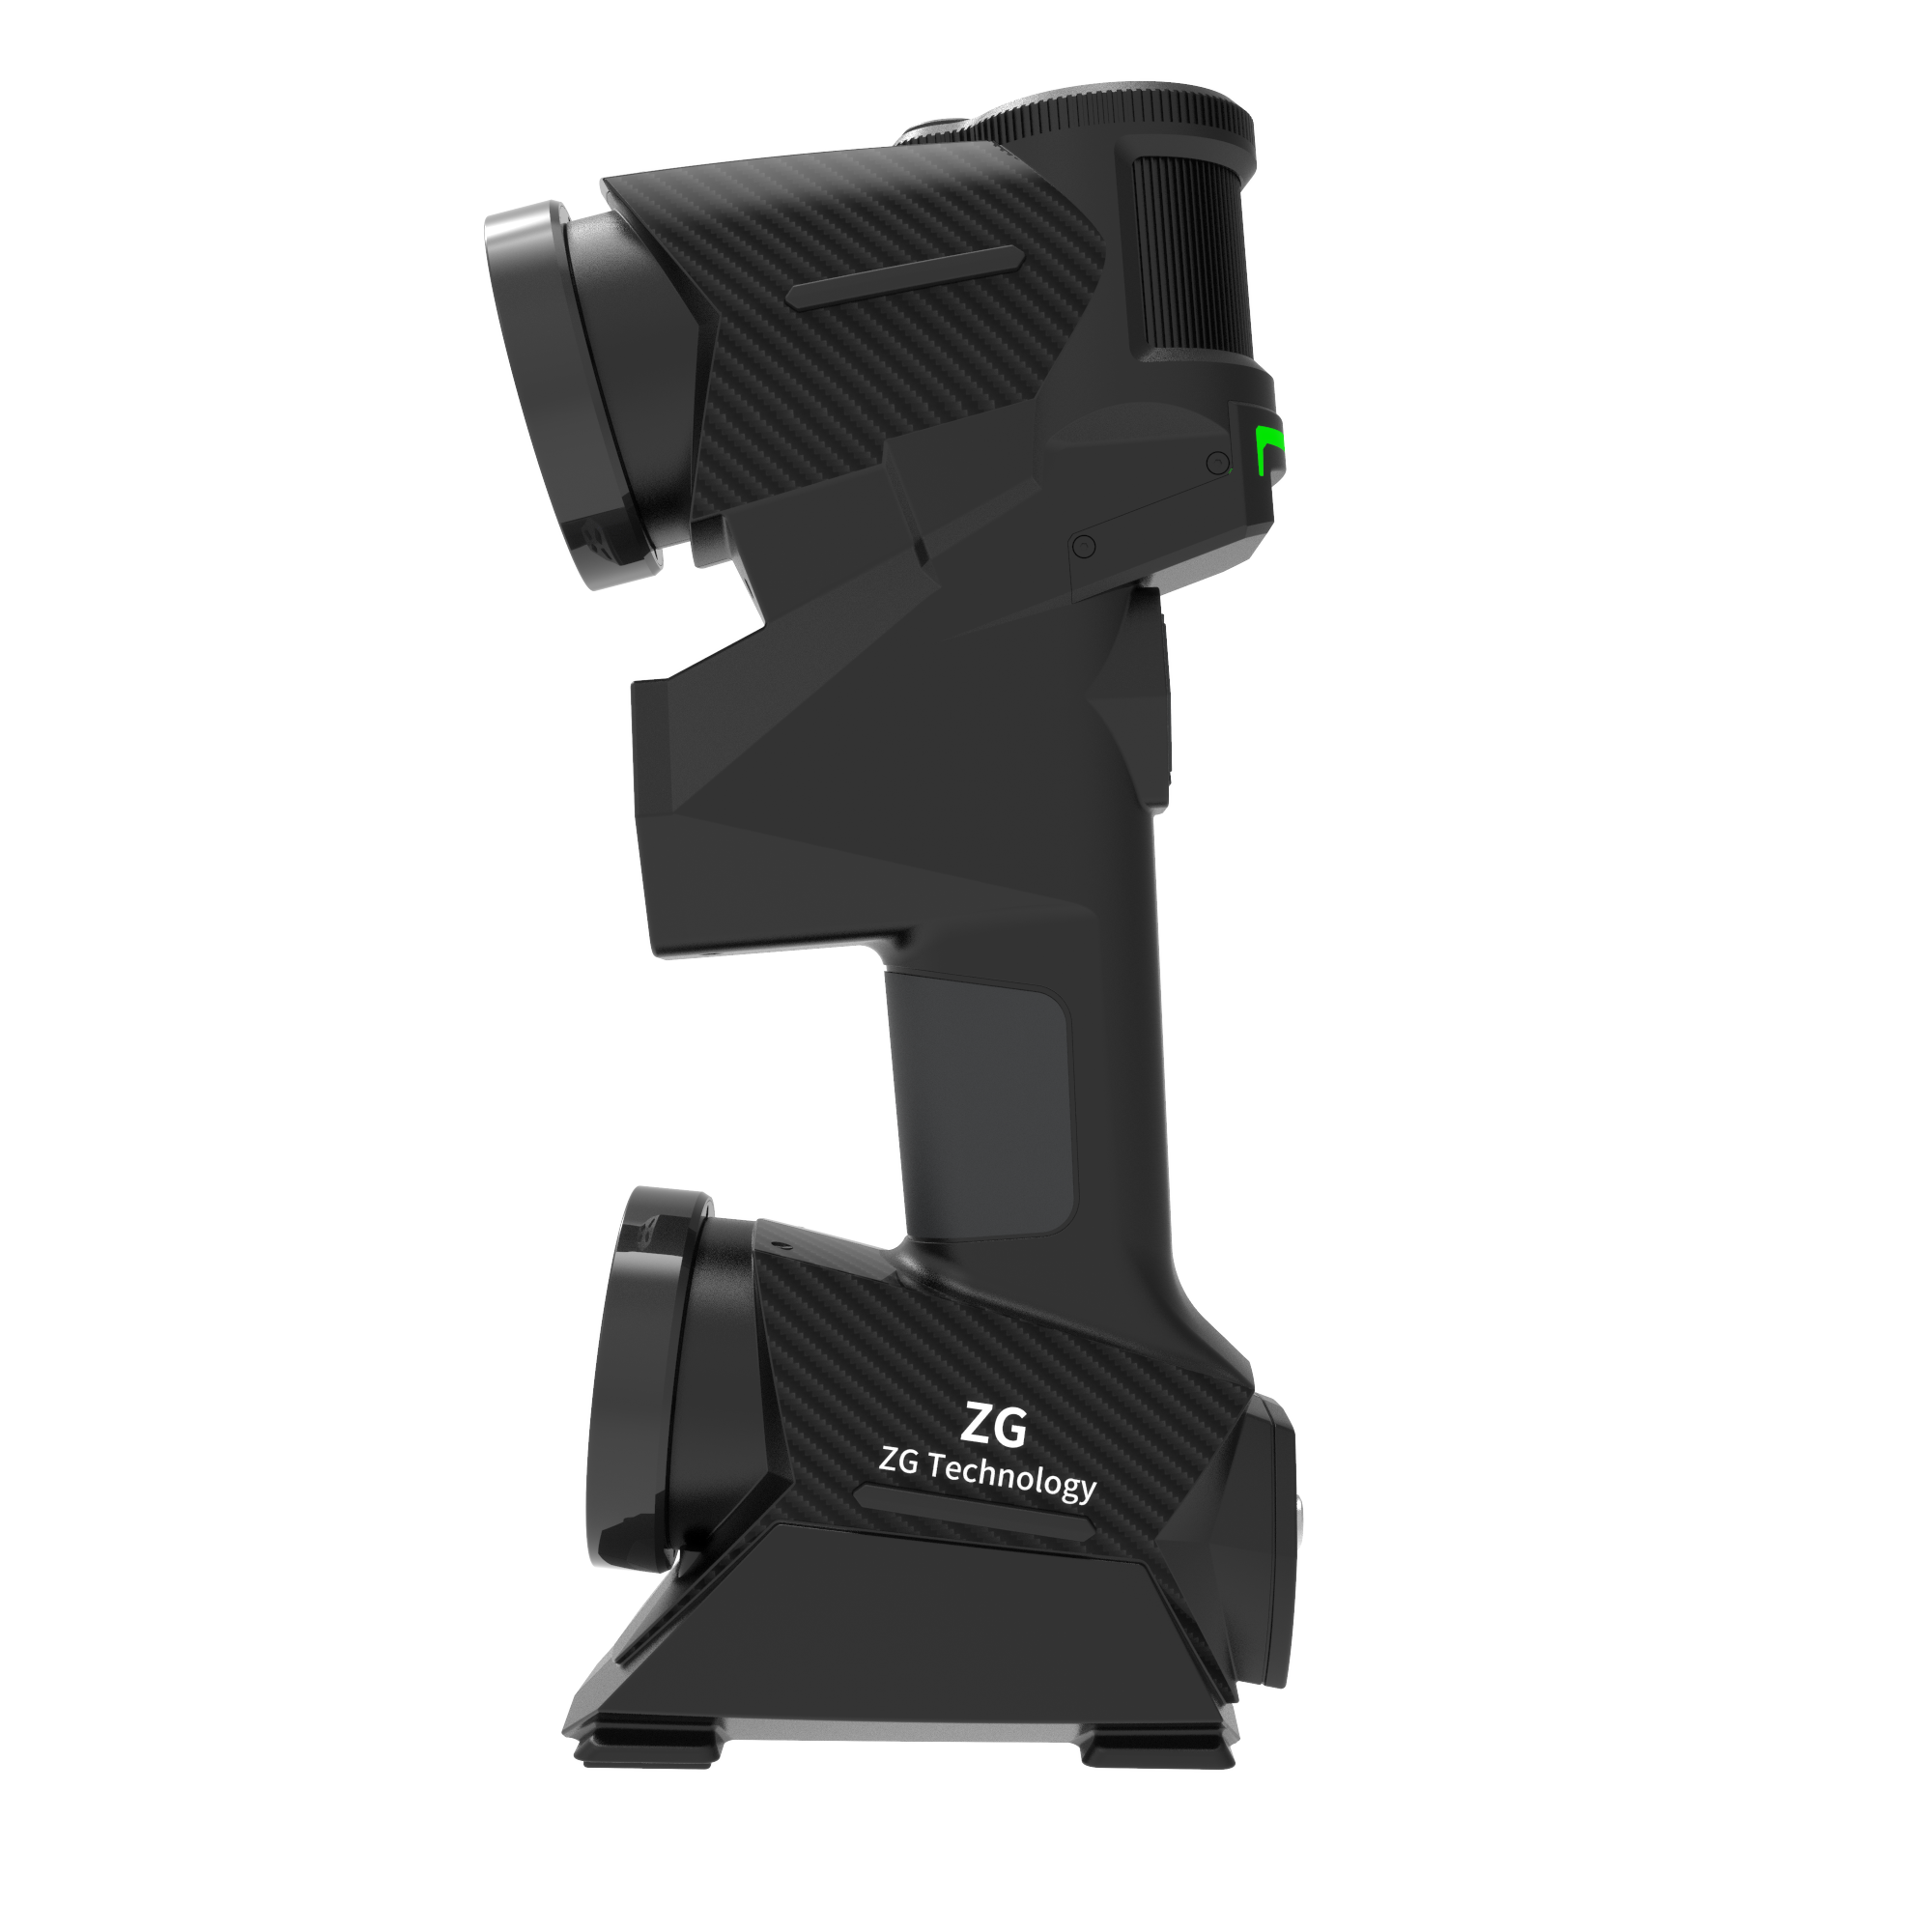 MarvelScanトラッカー無料マーカー無料高精度ポータブル3Dスキャナー